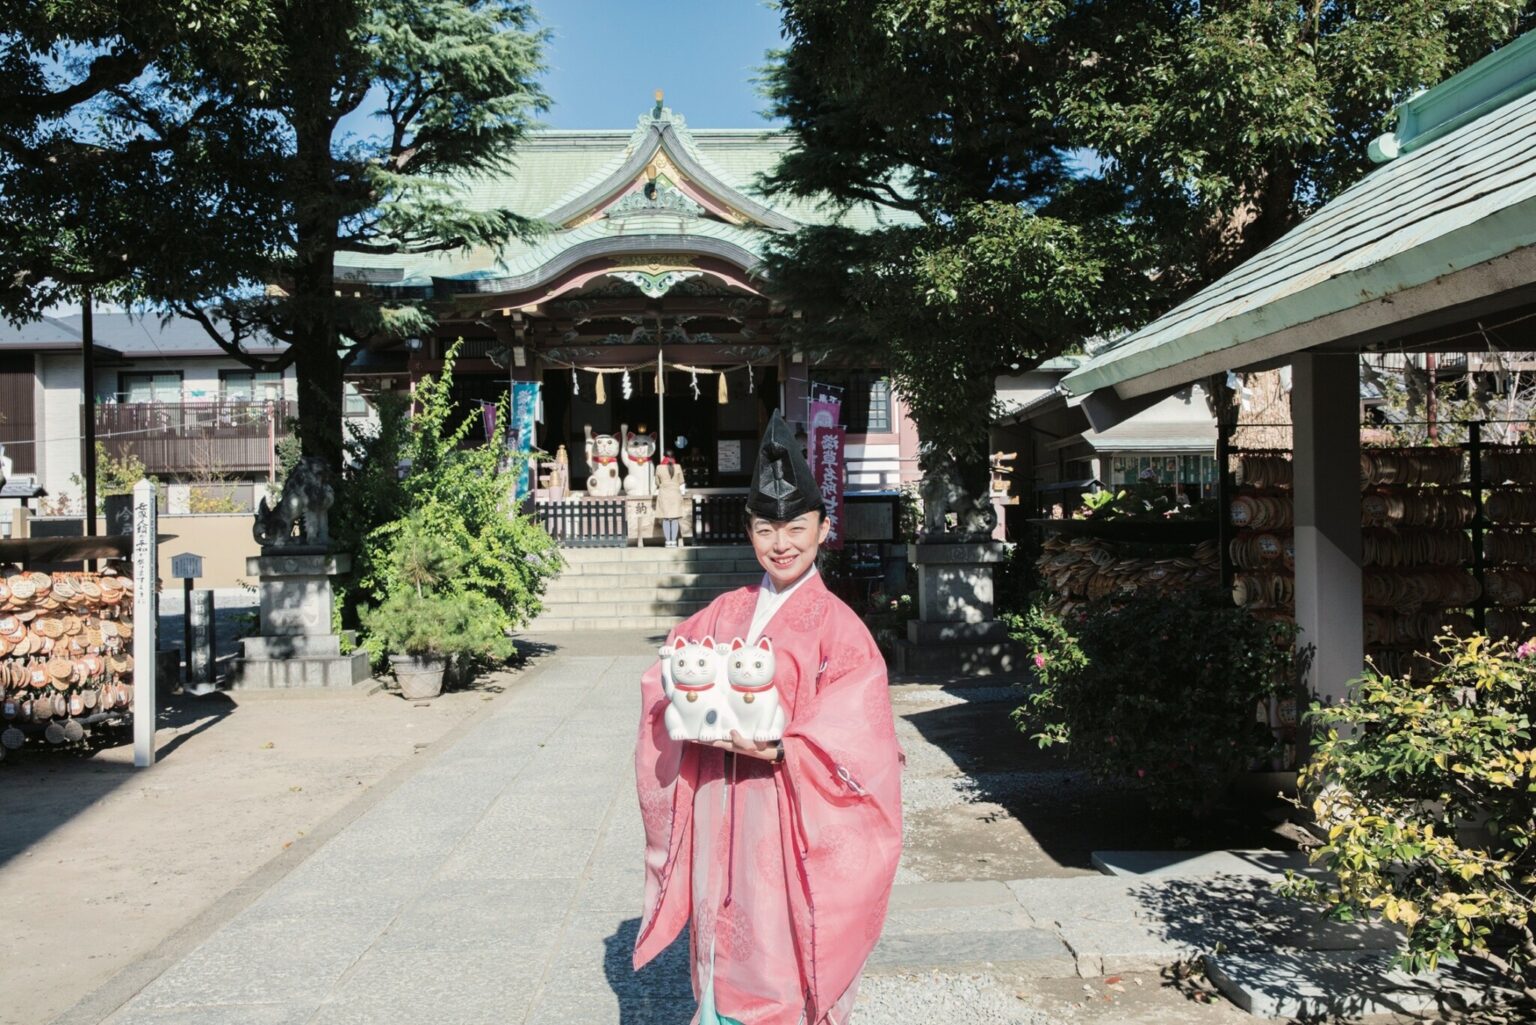 ご縁を求めるなら、東京〈今戸神社〉へ。明るい禰宜さんとかわいい猫たちがお出迎え。恋活も婚活もどーんと託してみたくなる「縁」をつなぐ神社で、楽しくお参りを。